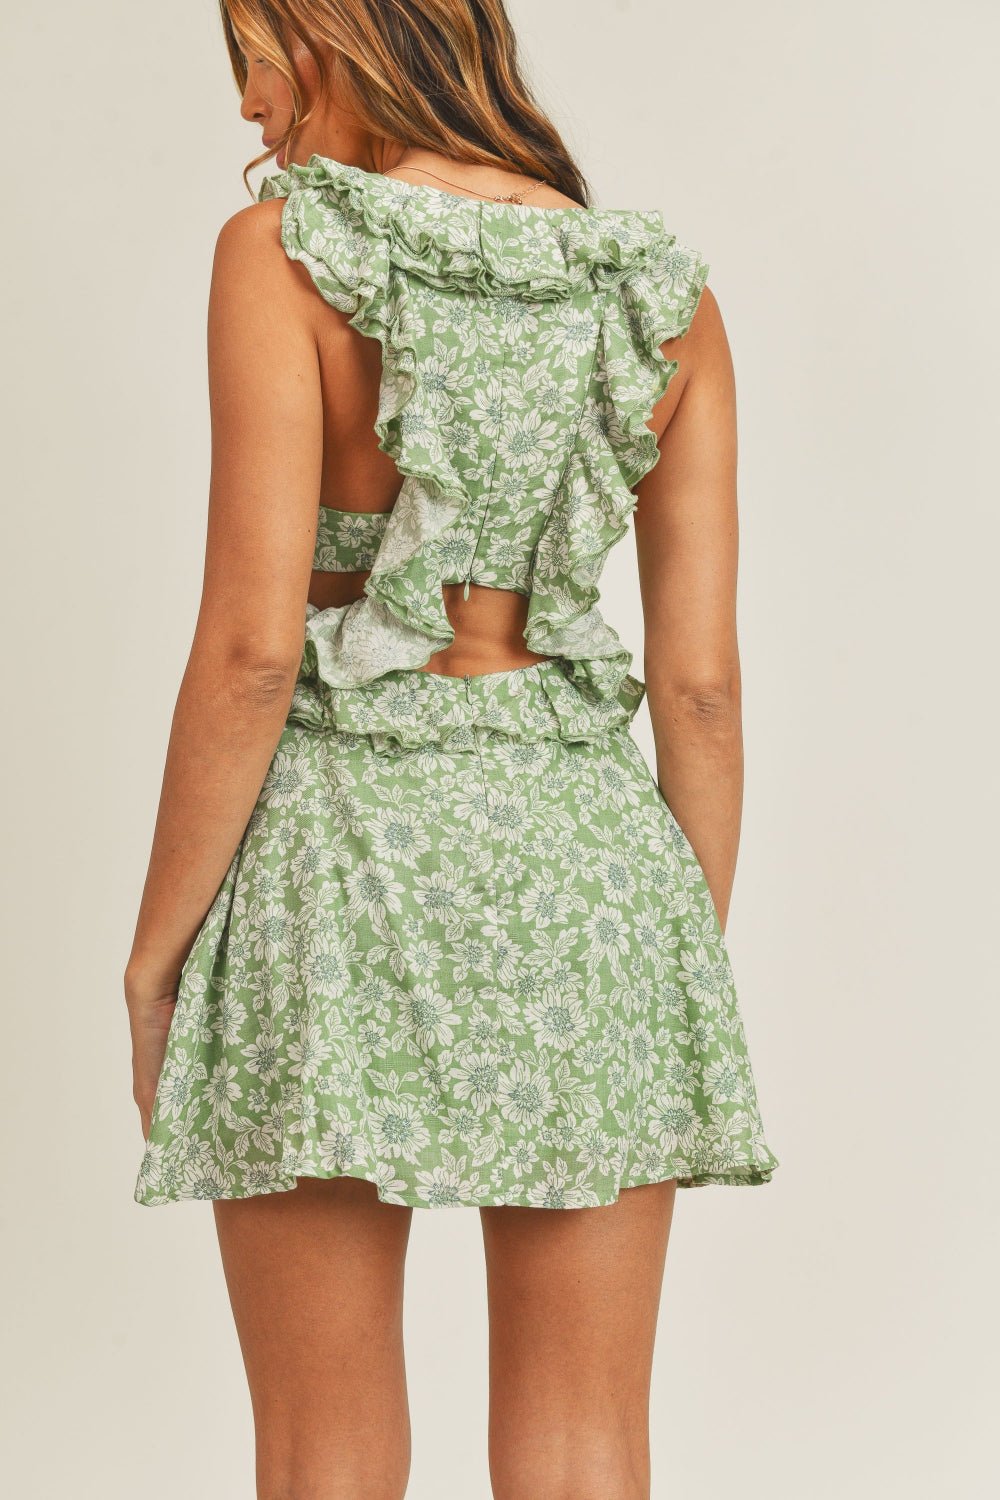 Floral Cutout Ruffled Mini Dress in SageMini DressMable